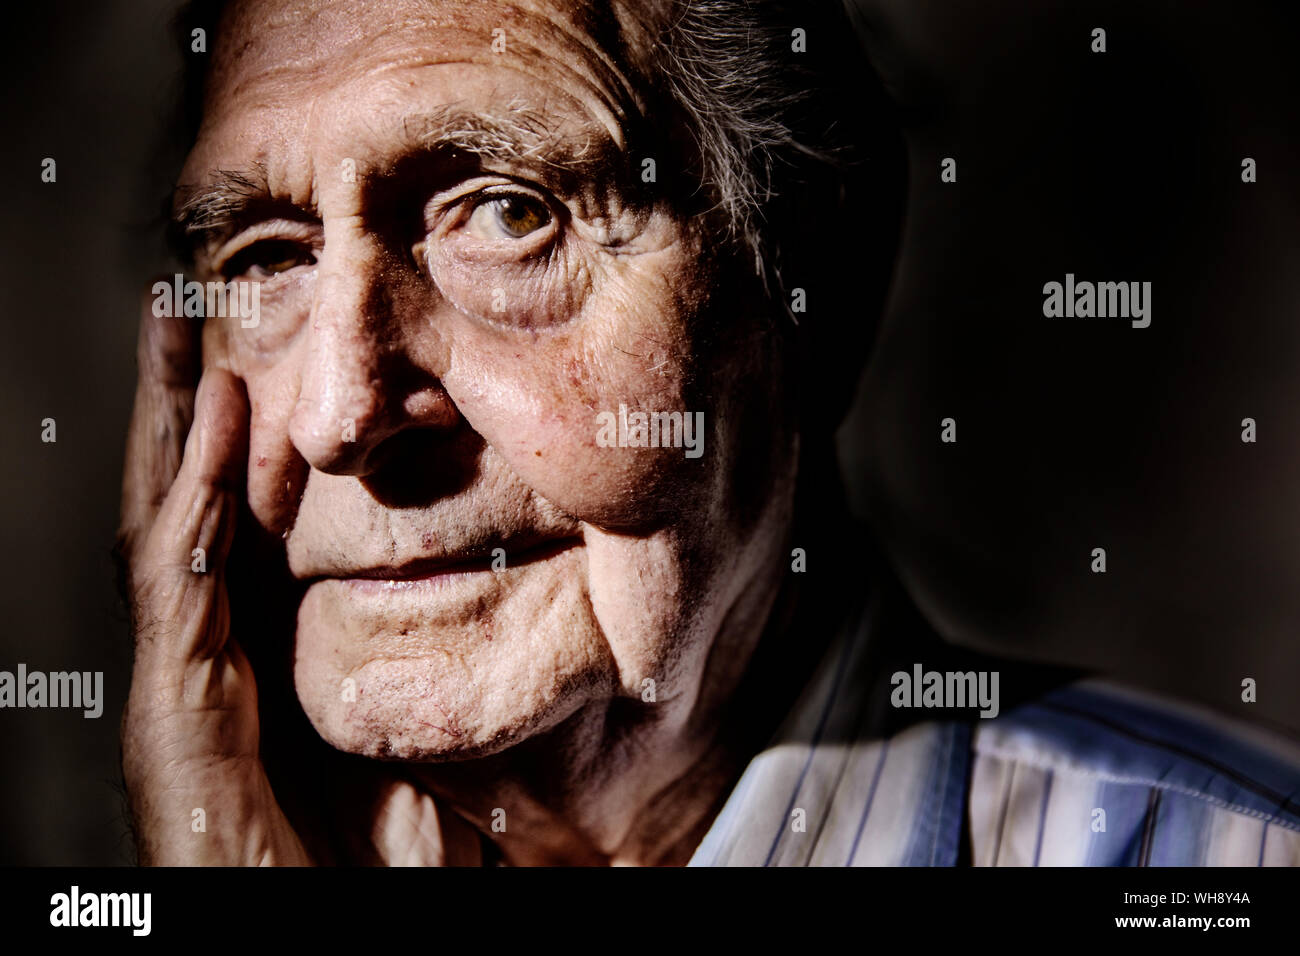 Ritratto di uomo anziano con la mano sulla faccia, close-up Foto Stock